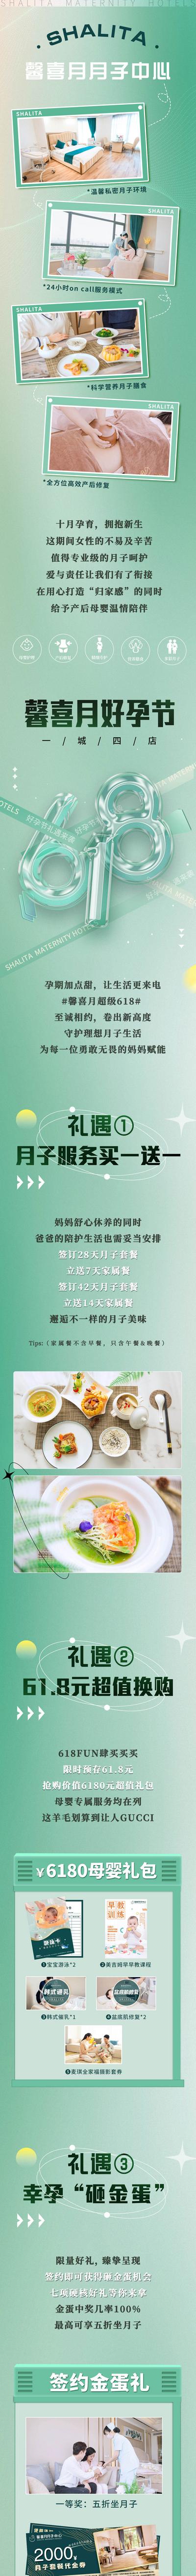 【南门网】专题设计 长图 618 月子中心 母婴 促销 礼遇 活动 绿色 简约